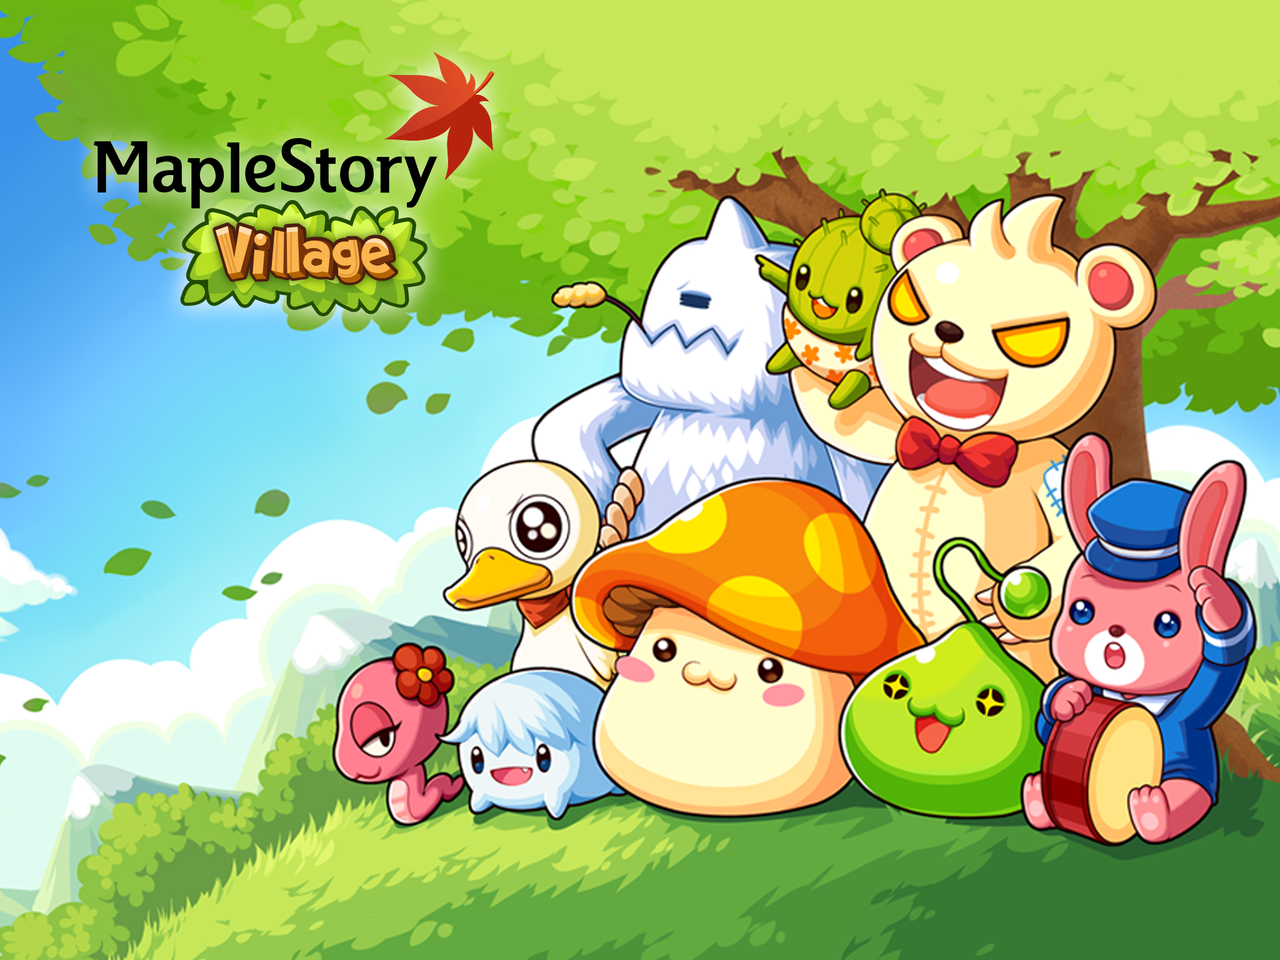 人気オンラインゲーム メイプルストーリー のキャラクターが登場 モンスター育成シミュレーションゲーム Line Maplestory Village Androidアプリ Iphoneアプリ Livedoor ニュース